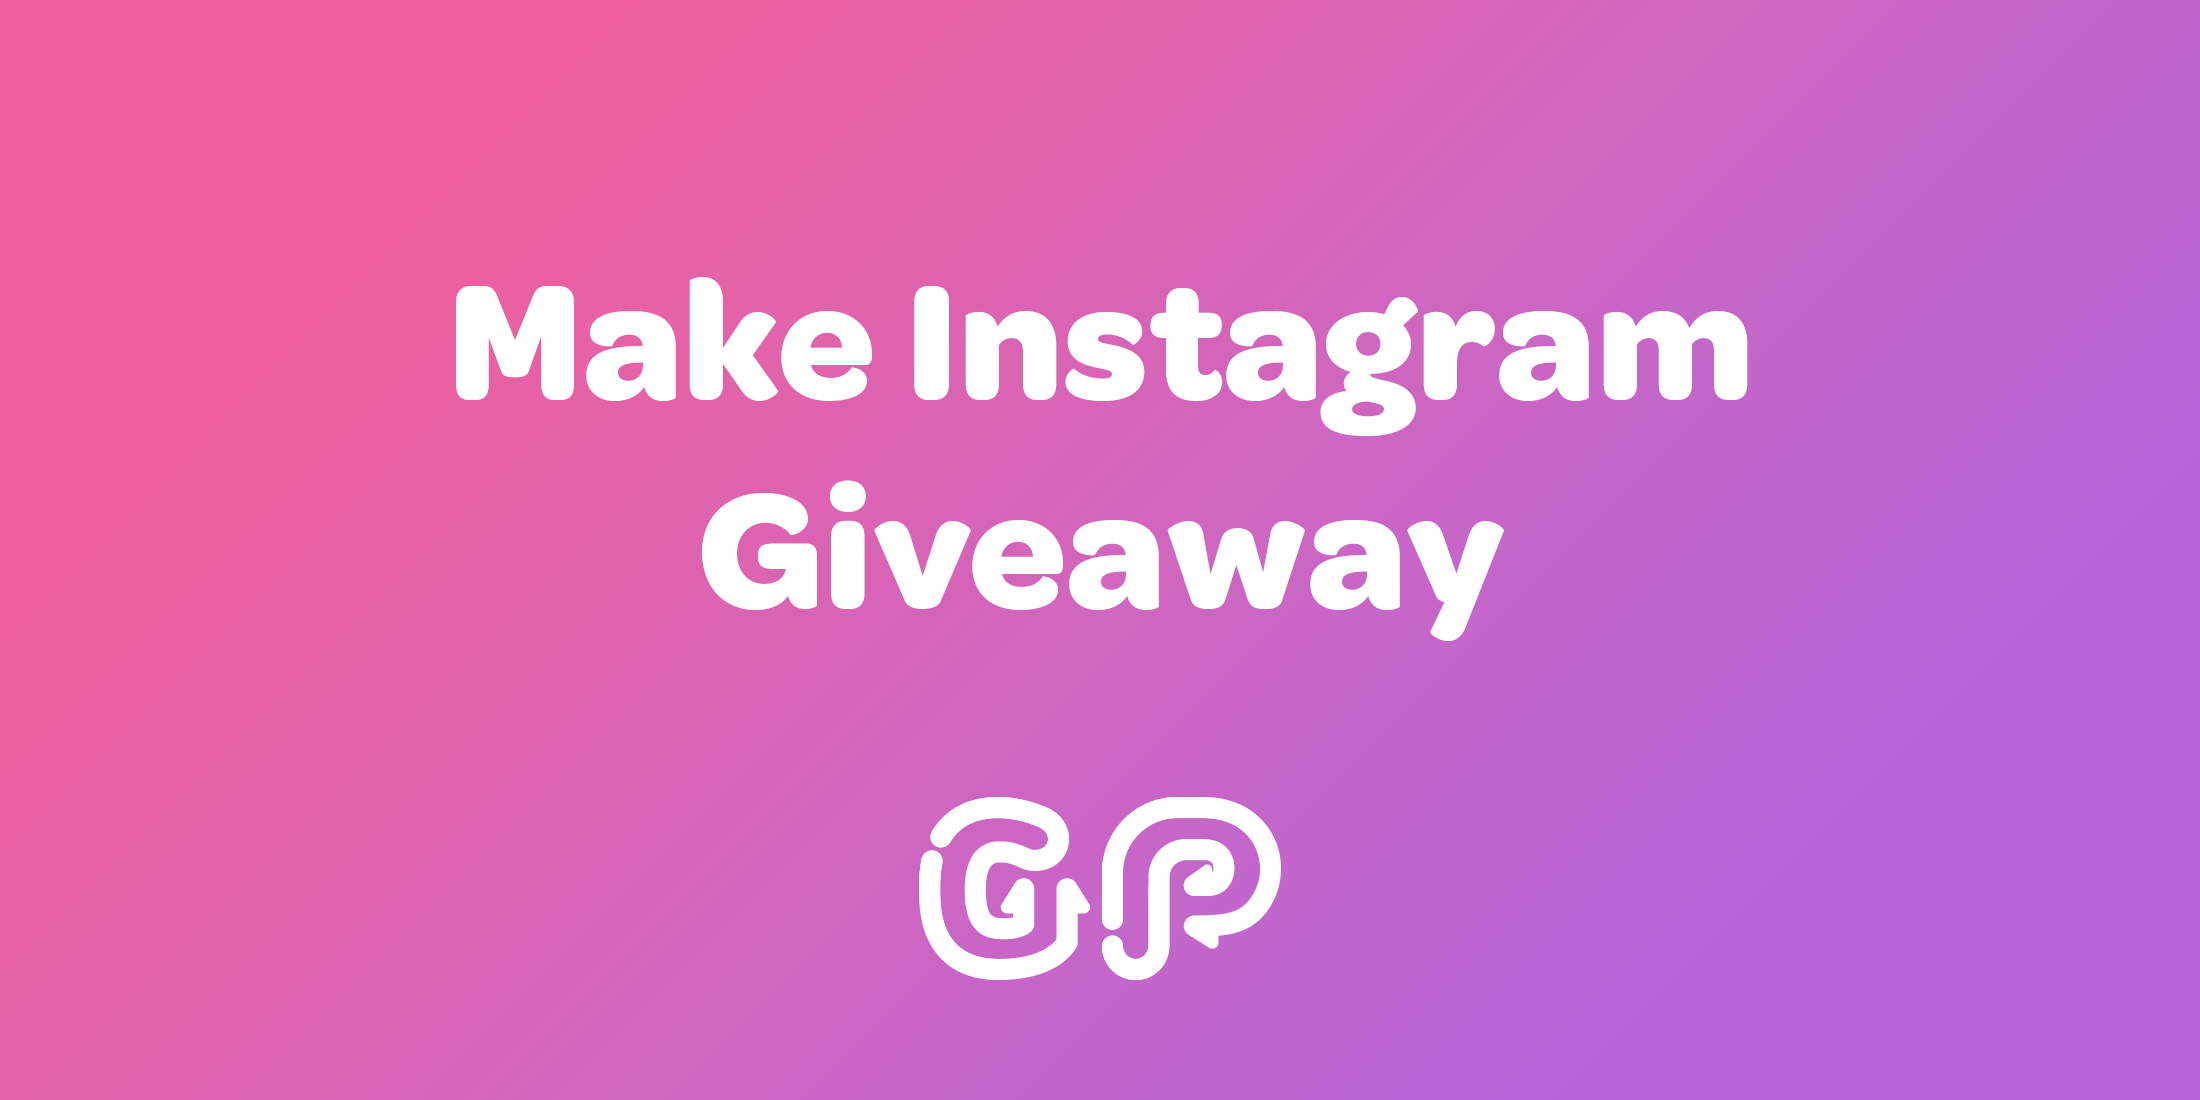 Make Instagram Giveaway